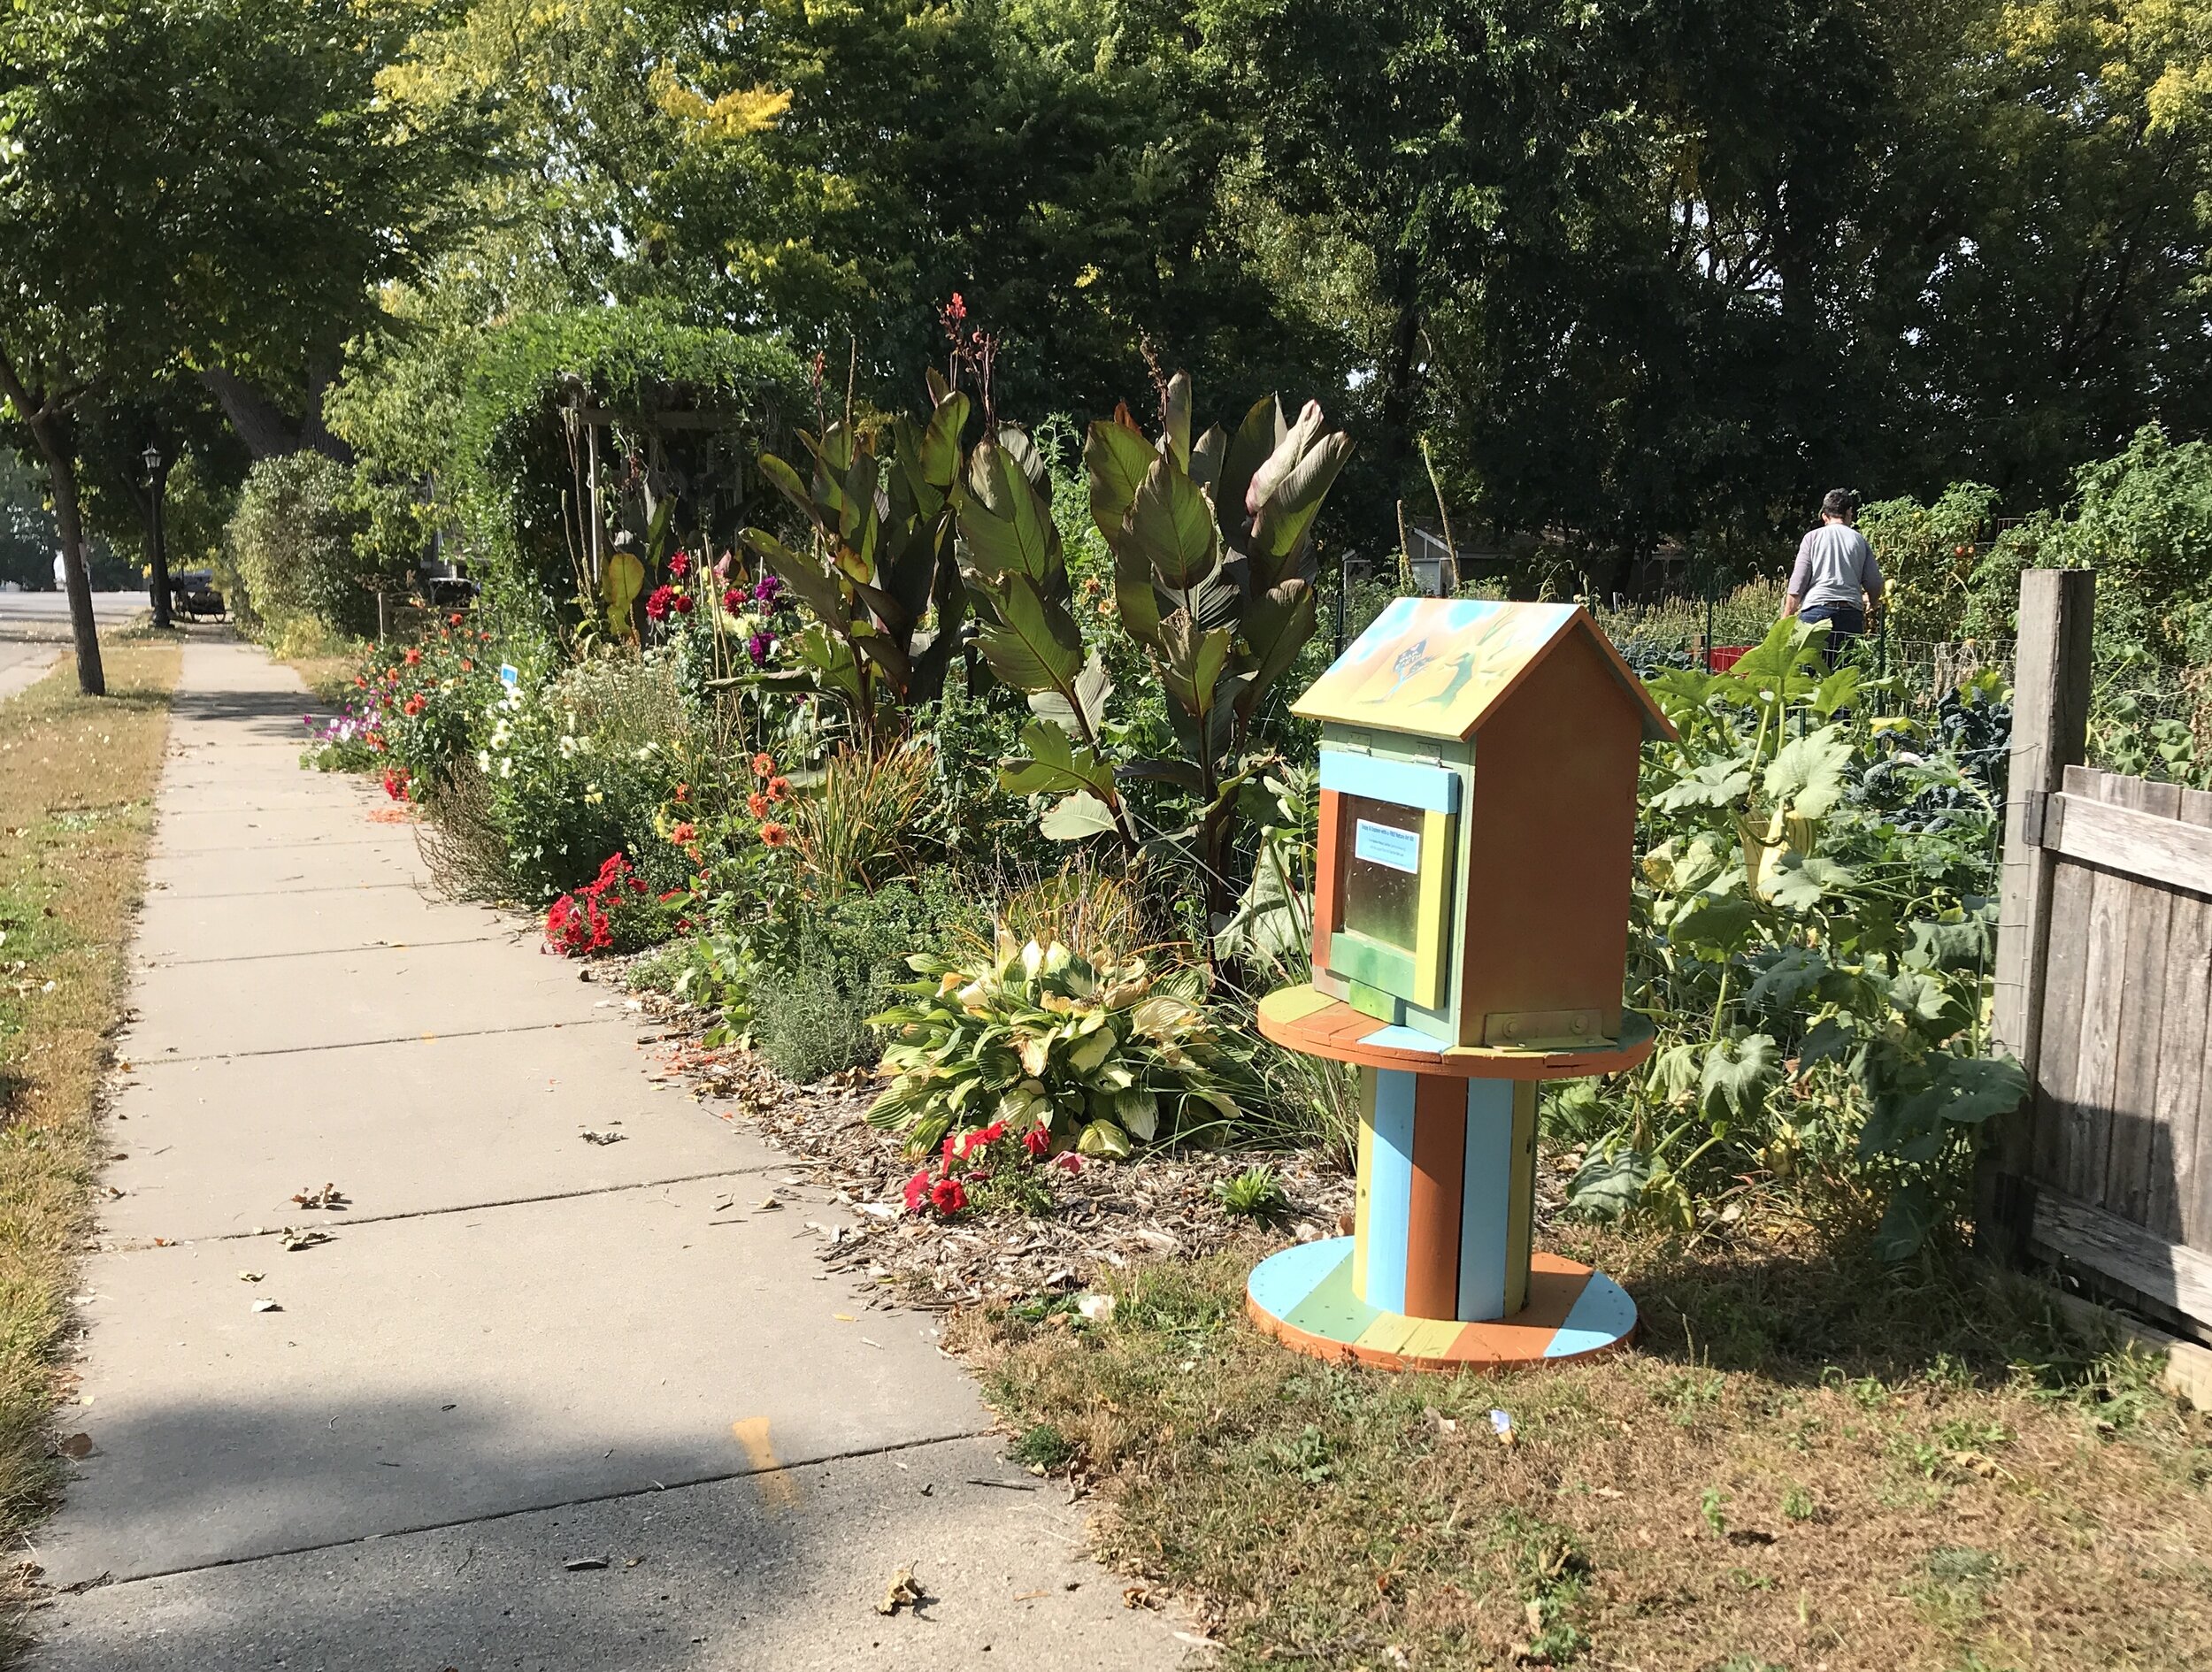 Mobile Nature Art Kiosk at Tatum Park &amp; Community Garden